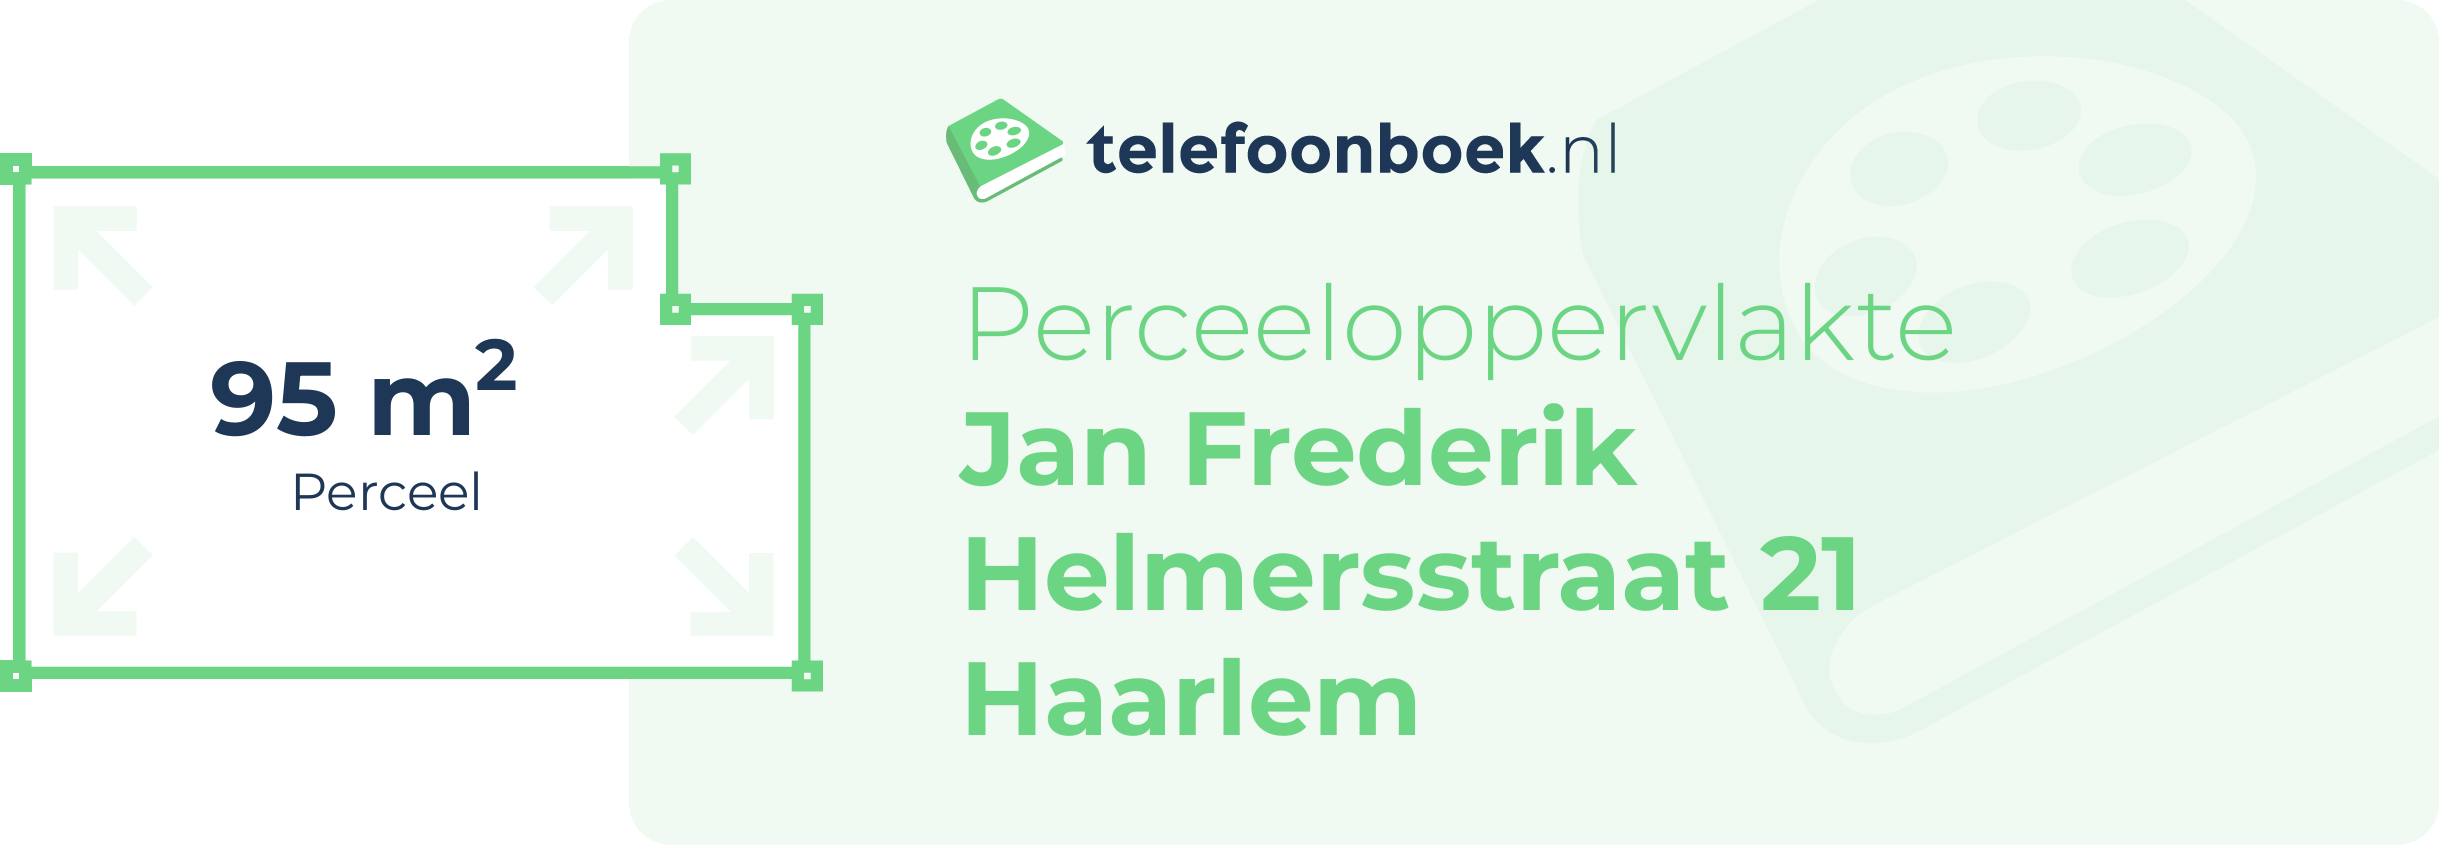 Perceeloppervlakte Jan Frederik Helmersstraat 21 Haarlem